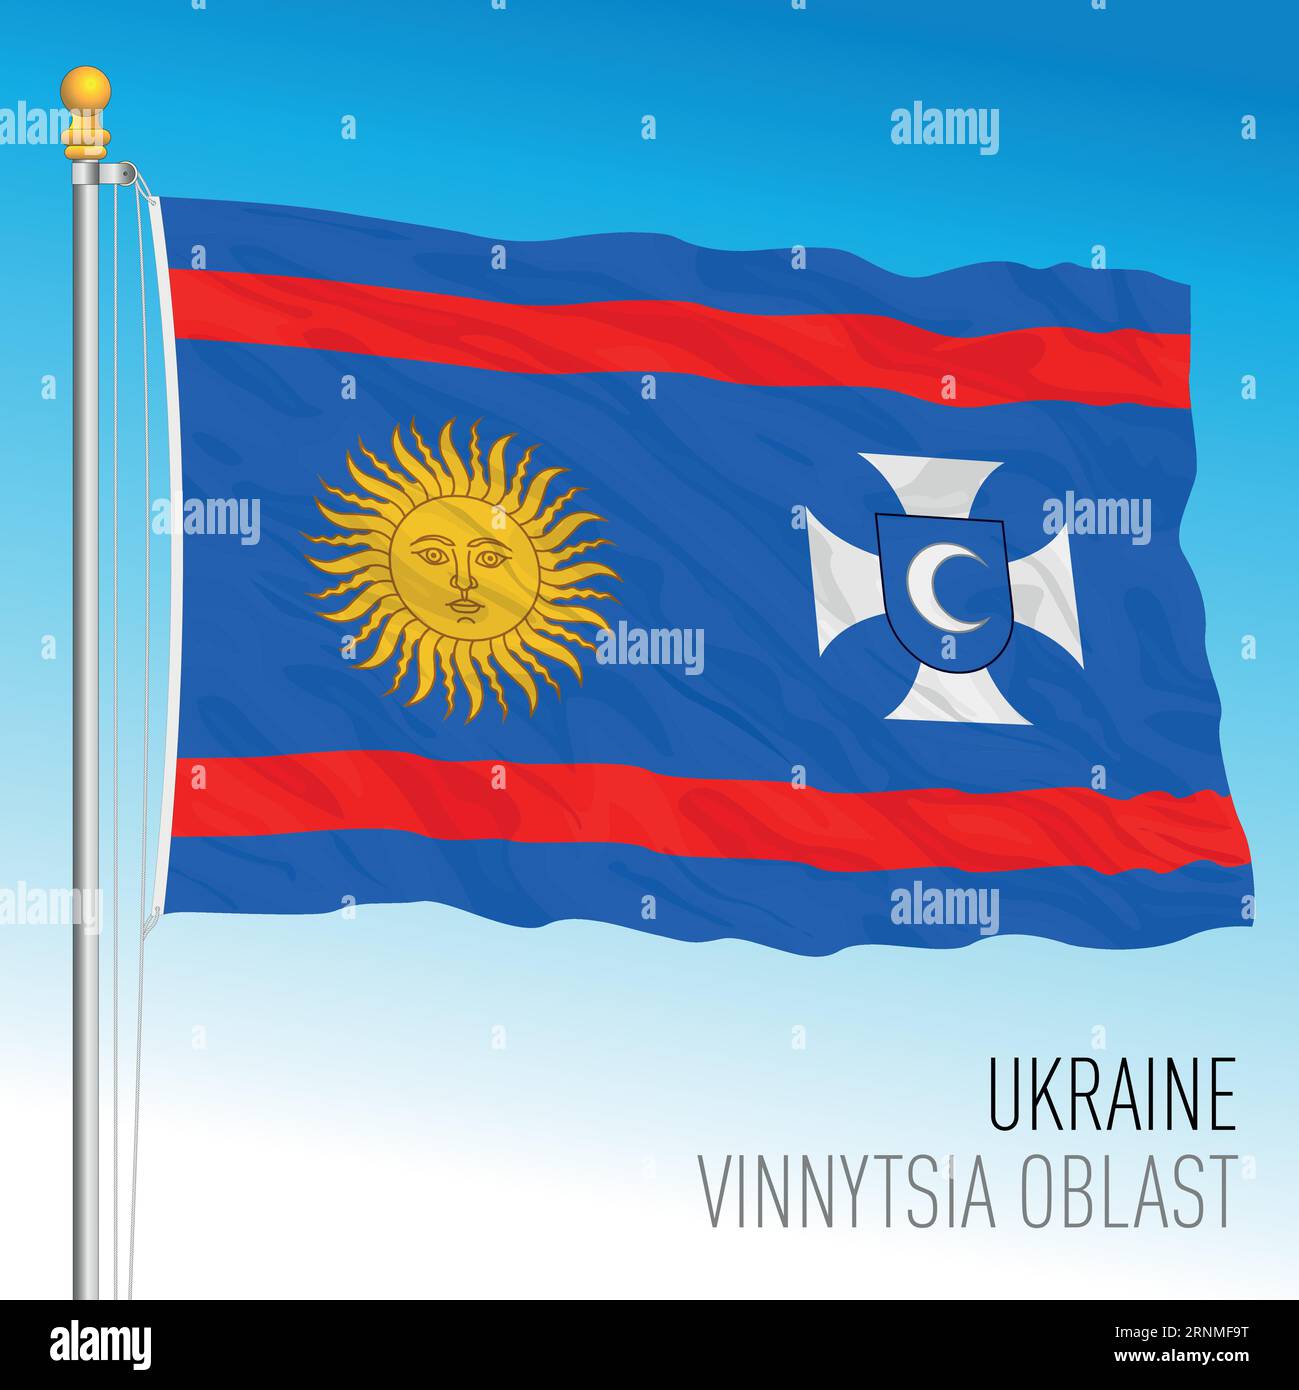 Ukraine, Vinnytsia Oblast waving flag, europe, vector illustration Stock Vector